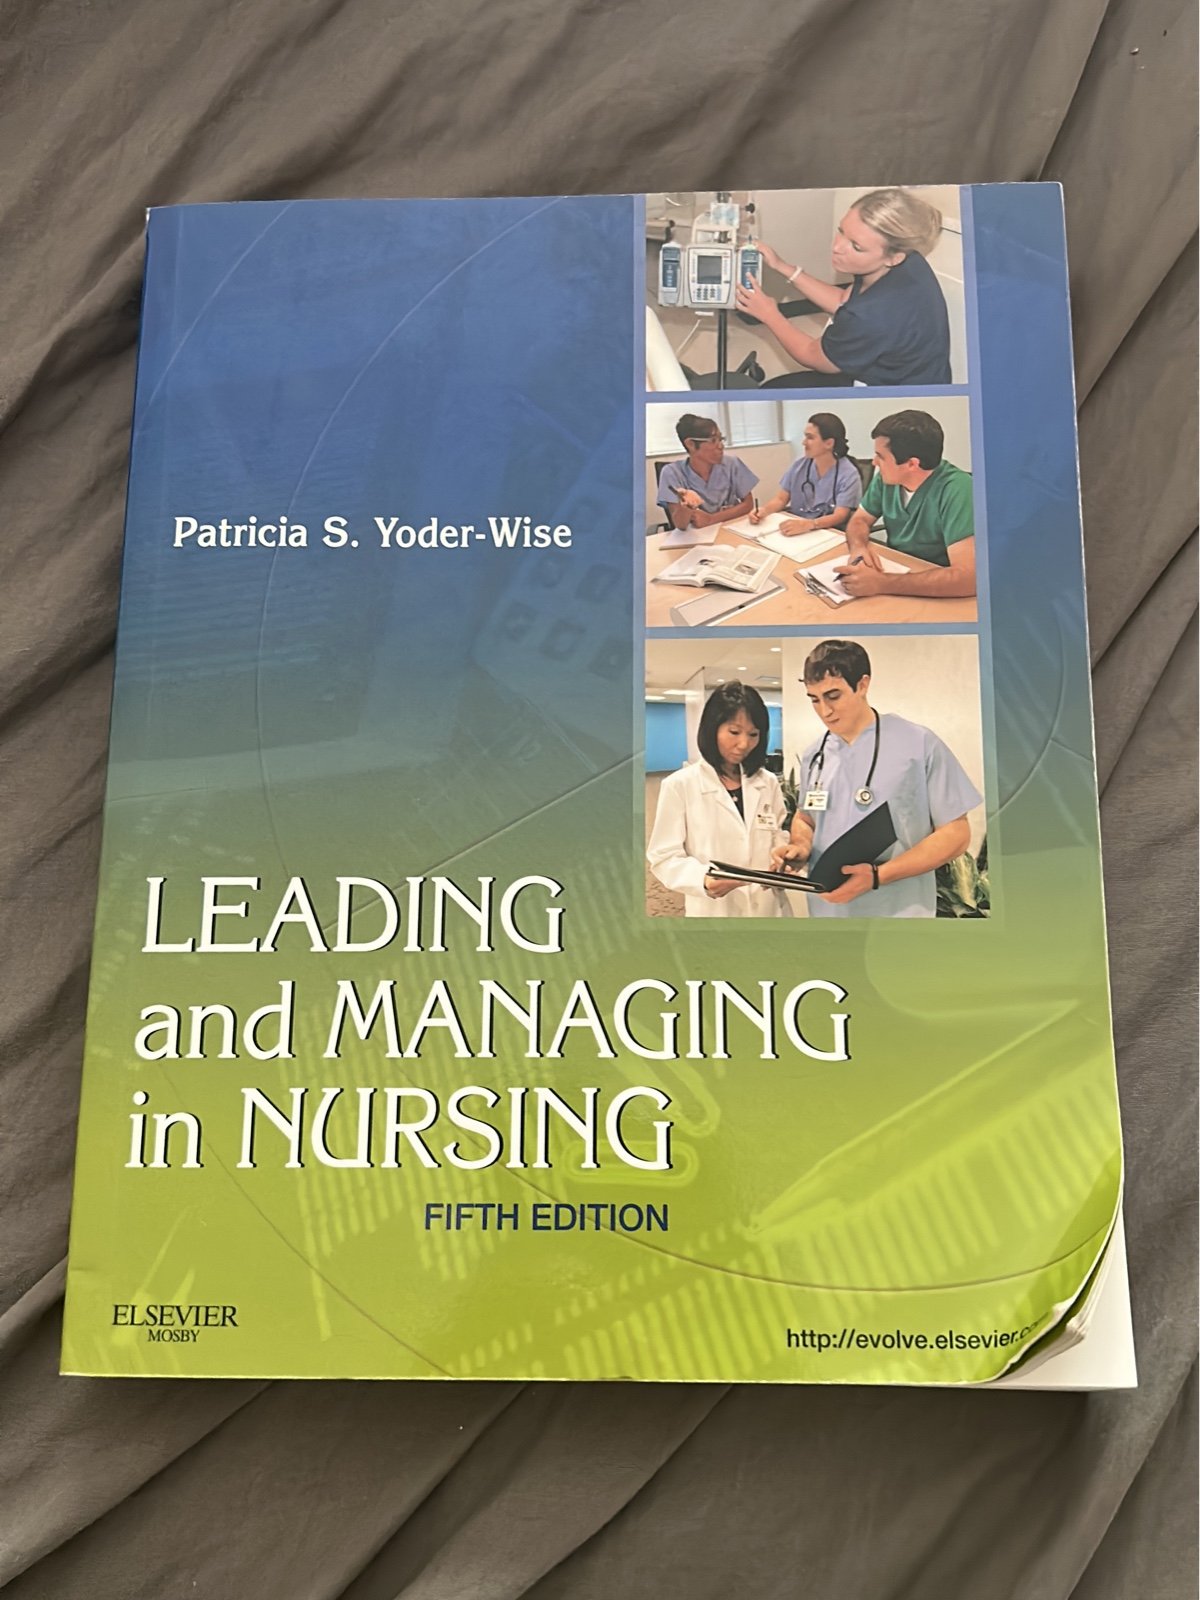 Nursing leasing and managing in nursing Bcltf63yd